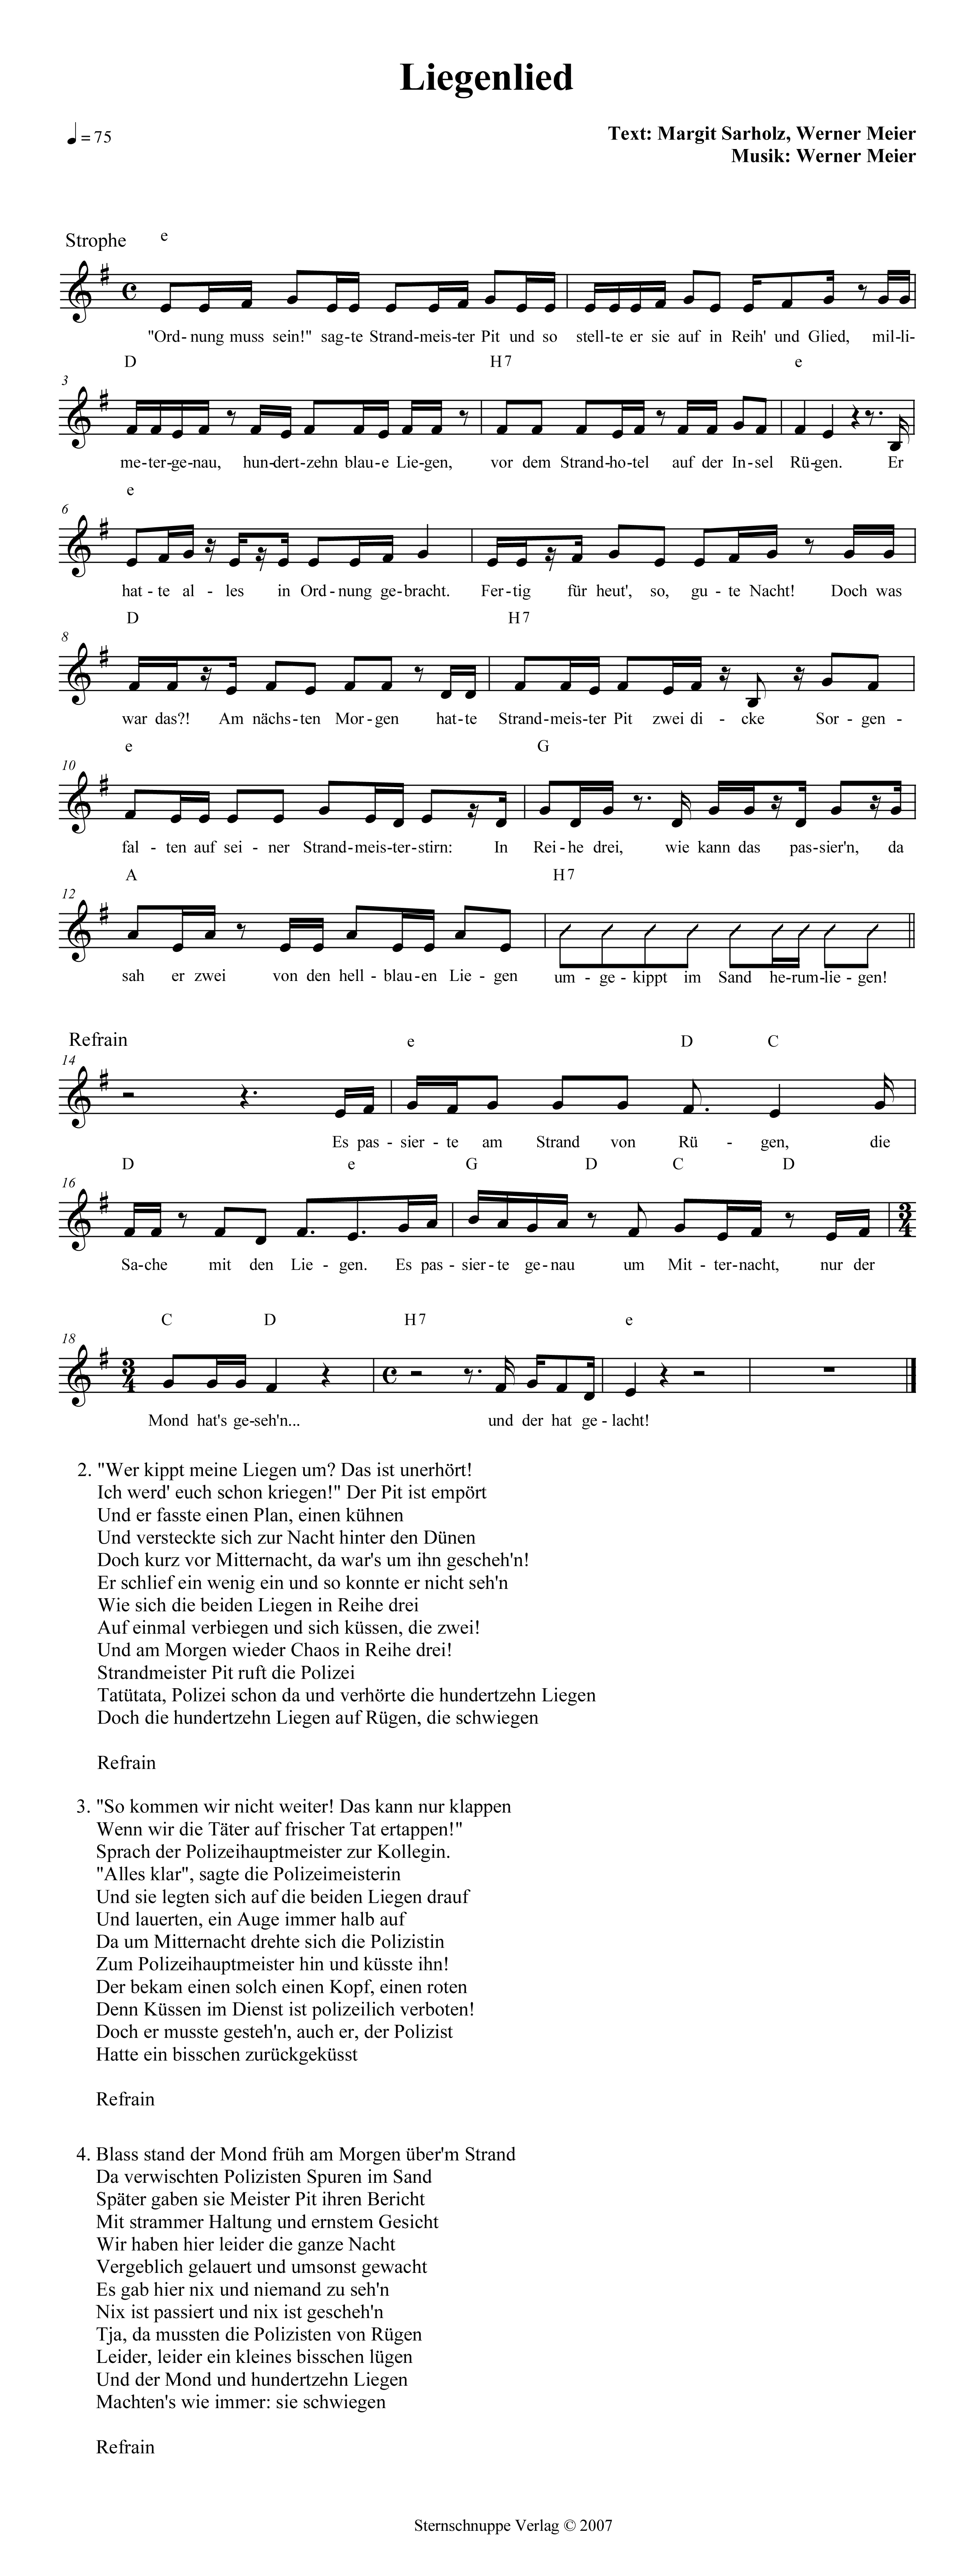 Liedtext, Akkorde und Noten vom Kinderlied Liegenlied